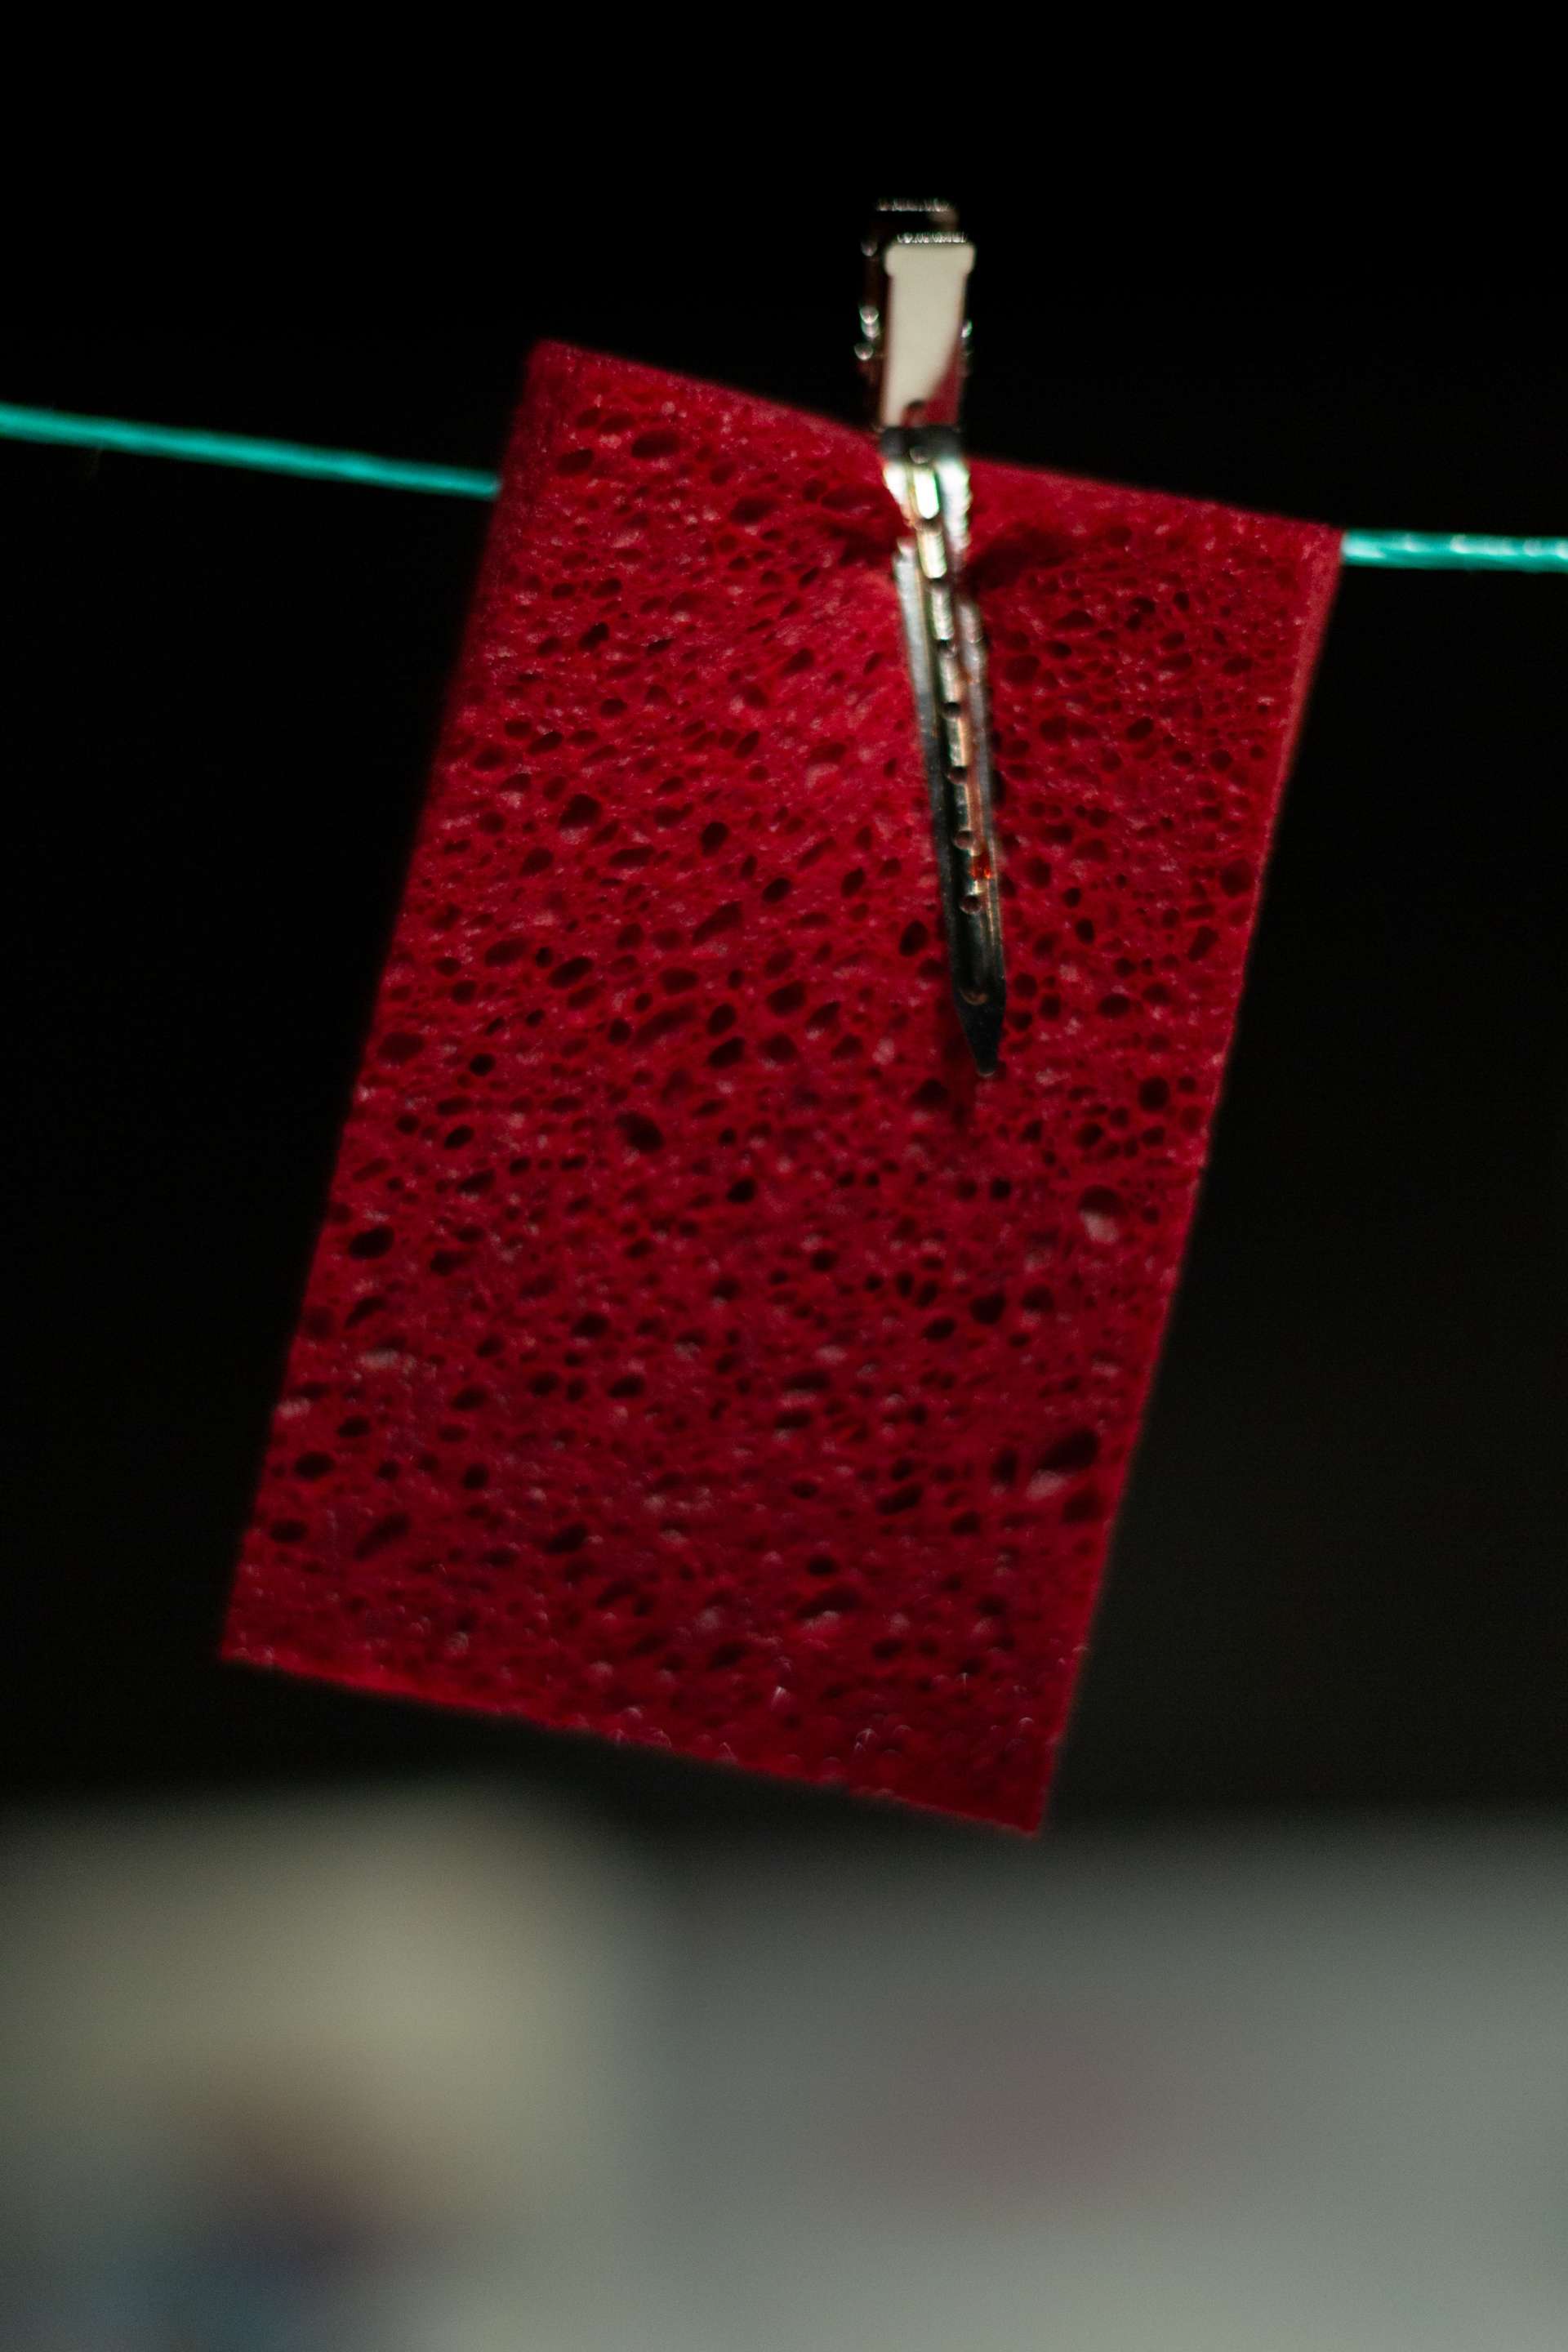 Une éponge rouge suspendue à un fil vert par une pince métallique.